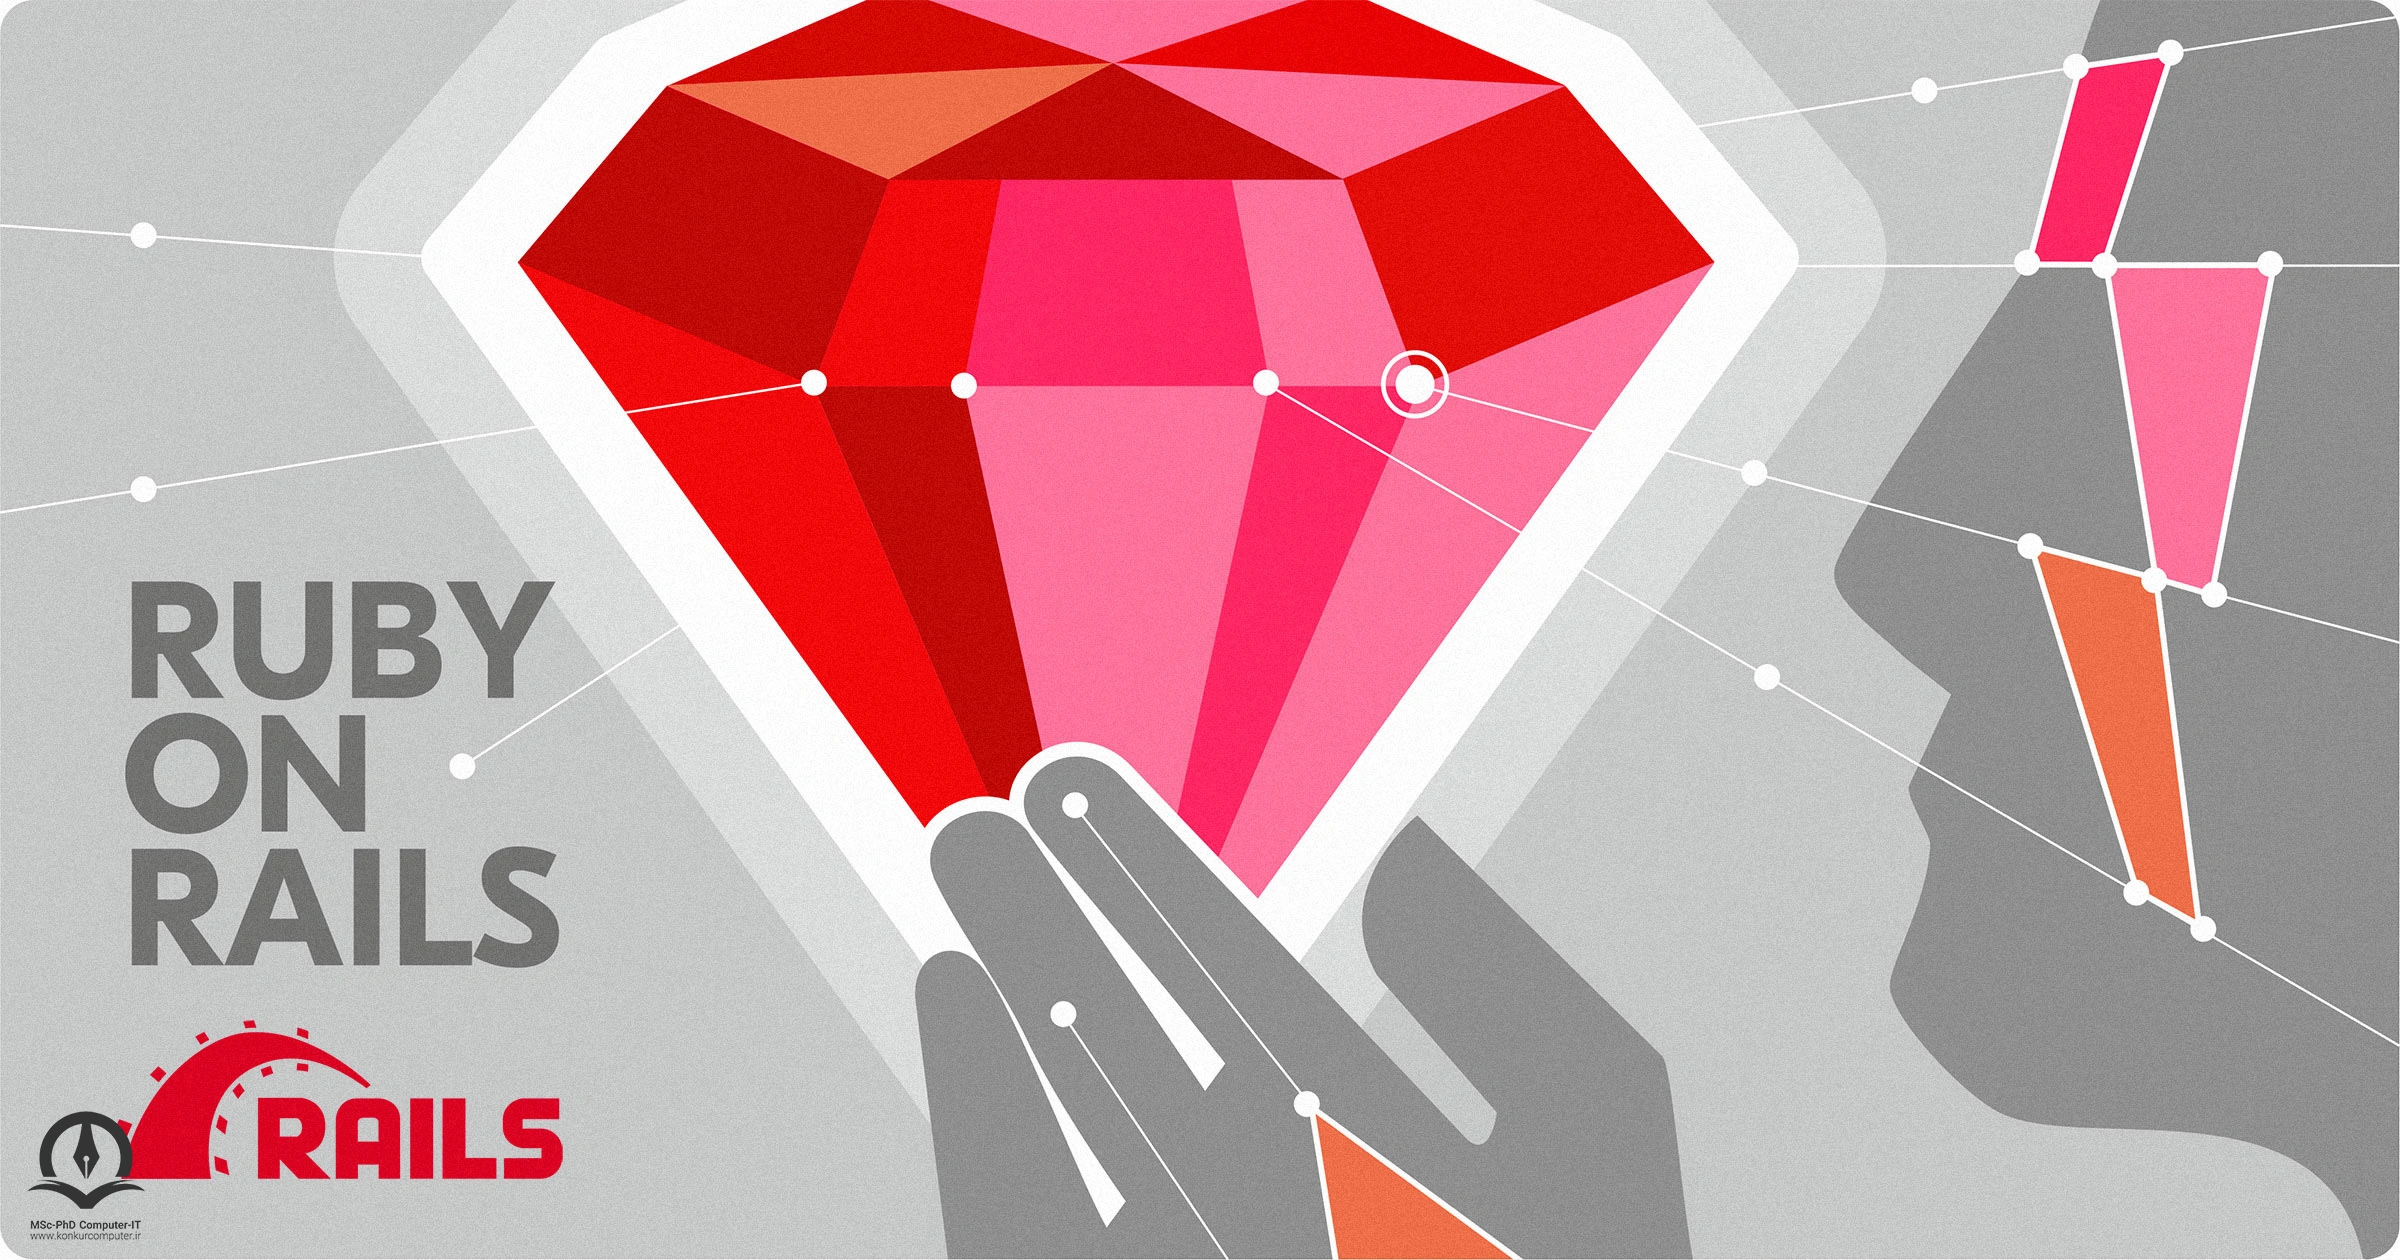 در این تصویر الماس قرمزی که لوگو فریمورک Ruby on Rails است نمایش داده شده است.